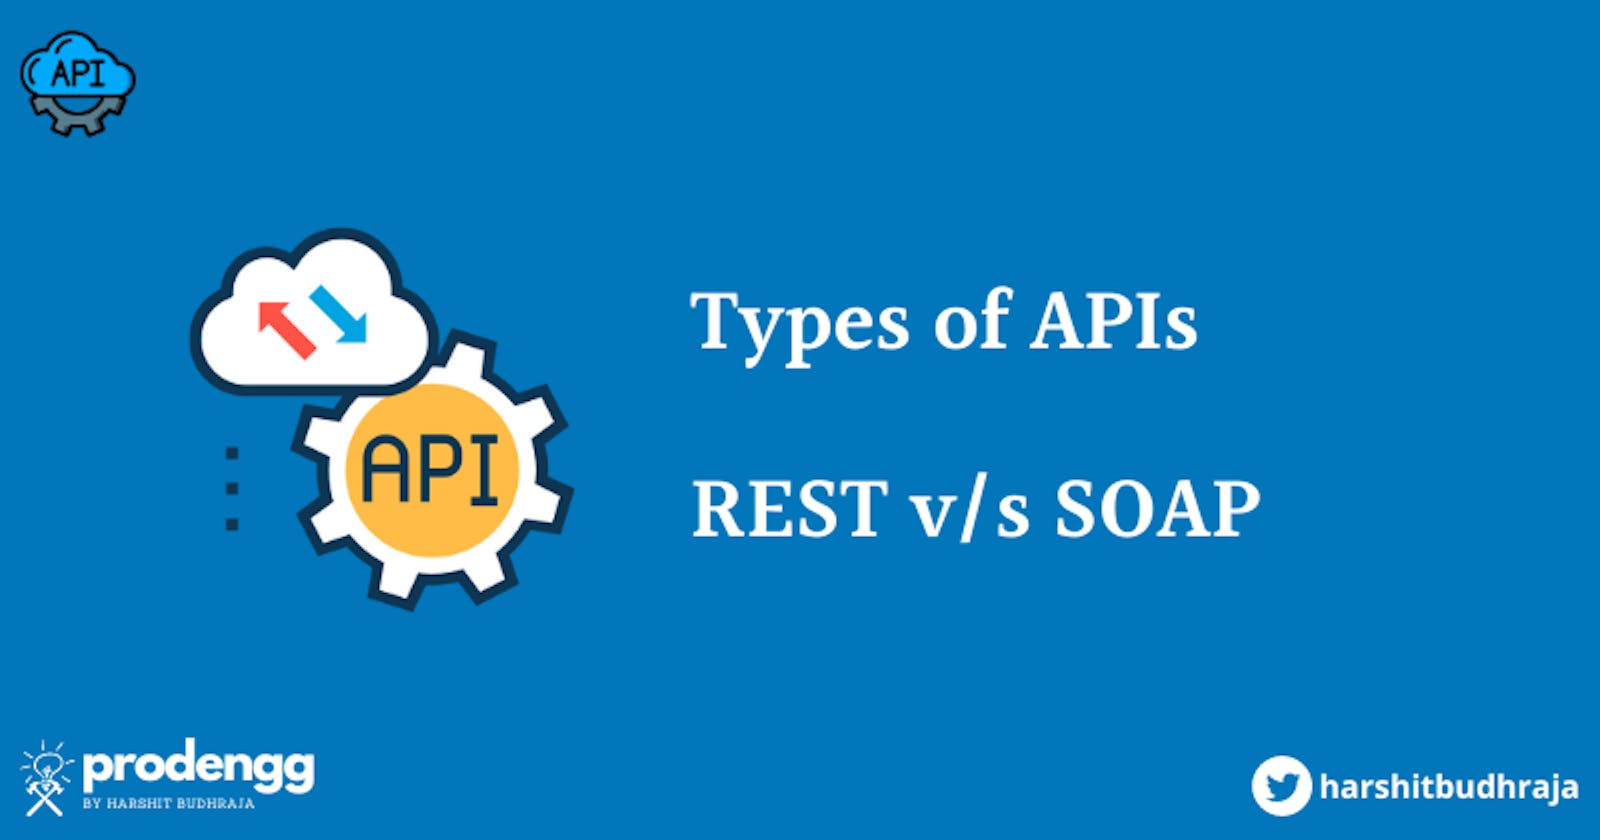 Types of APIs: REST v/s SOAP